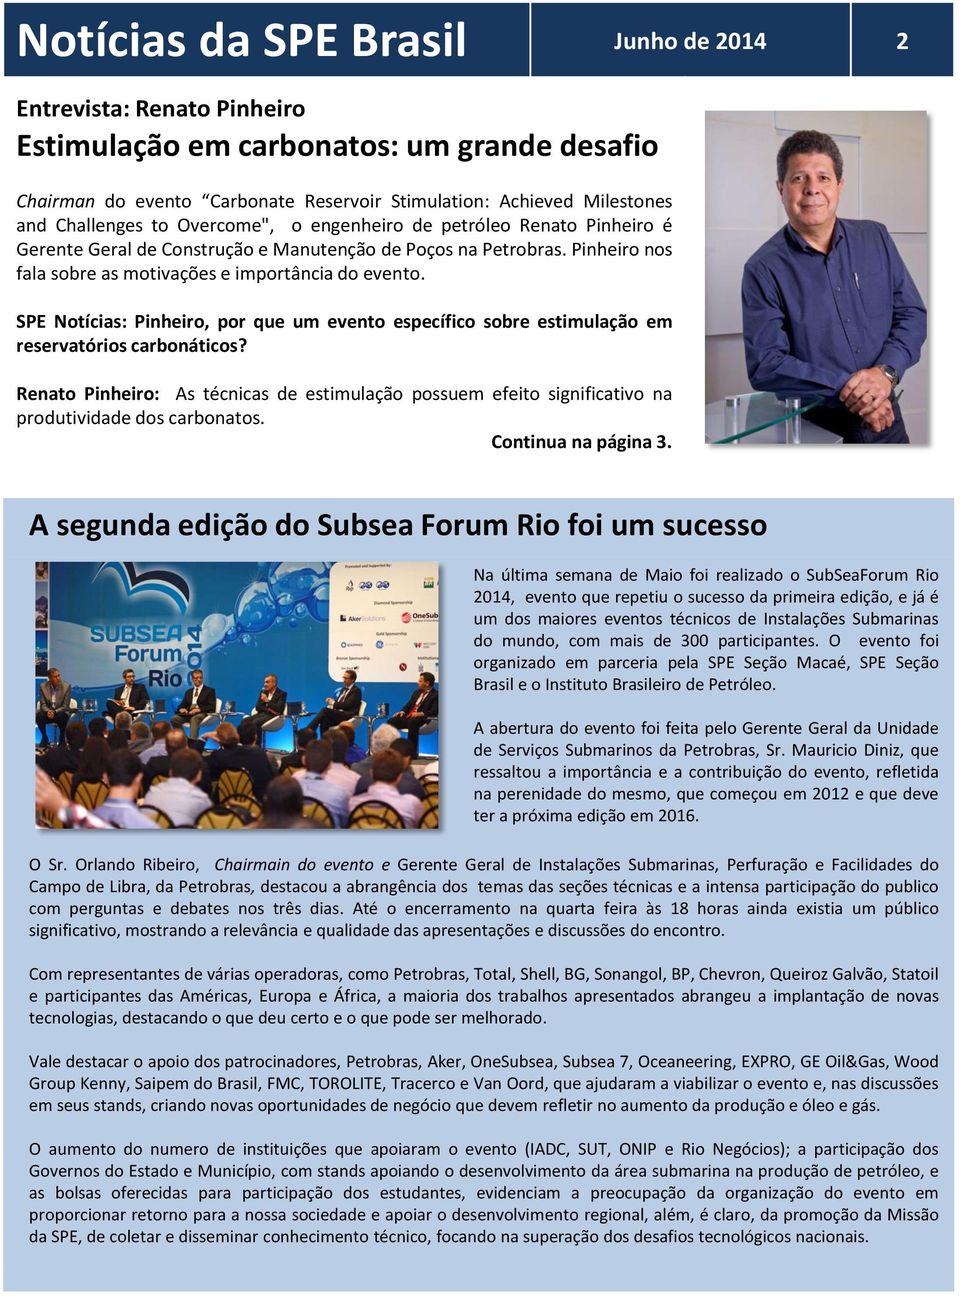 SPE Notícias: Pinheiro, por que um evento específico sobre estimulação em reservatórios carbonáticos?